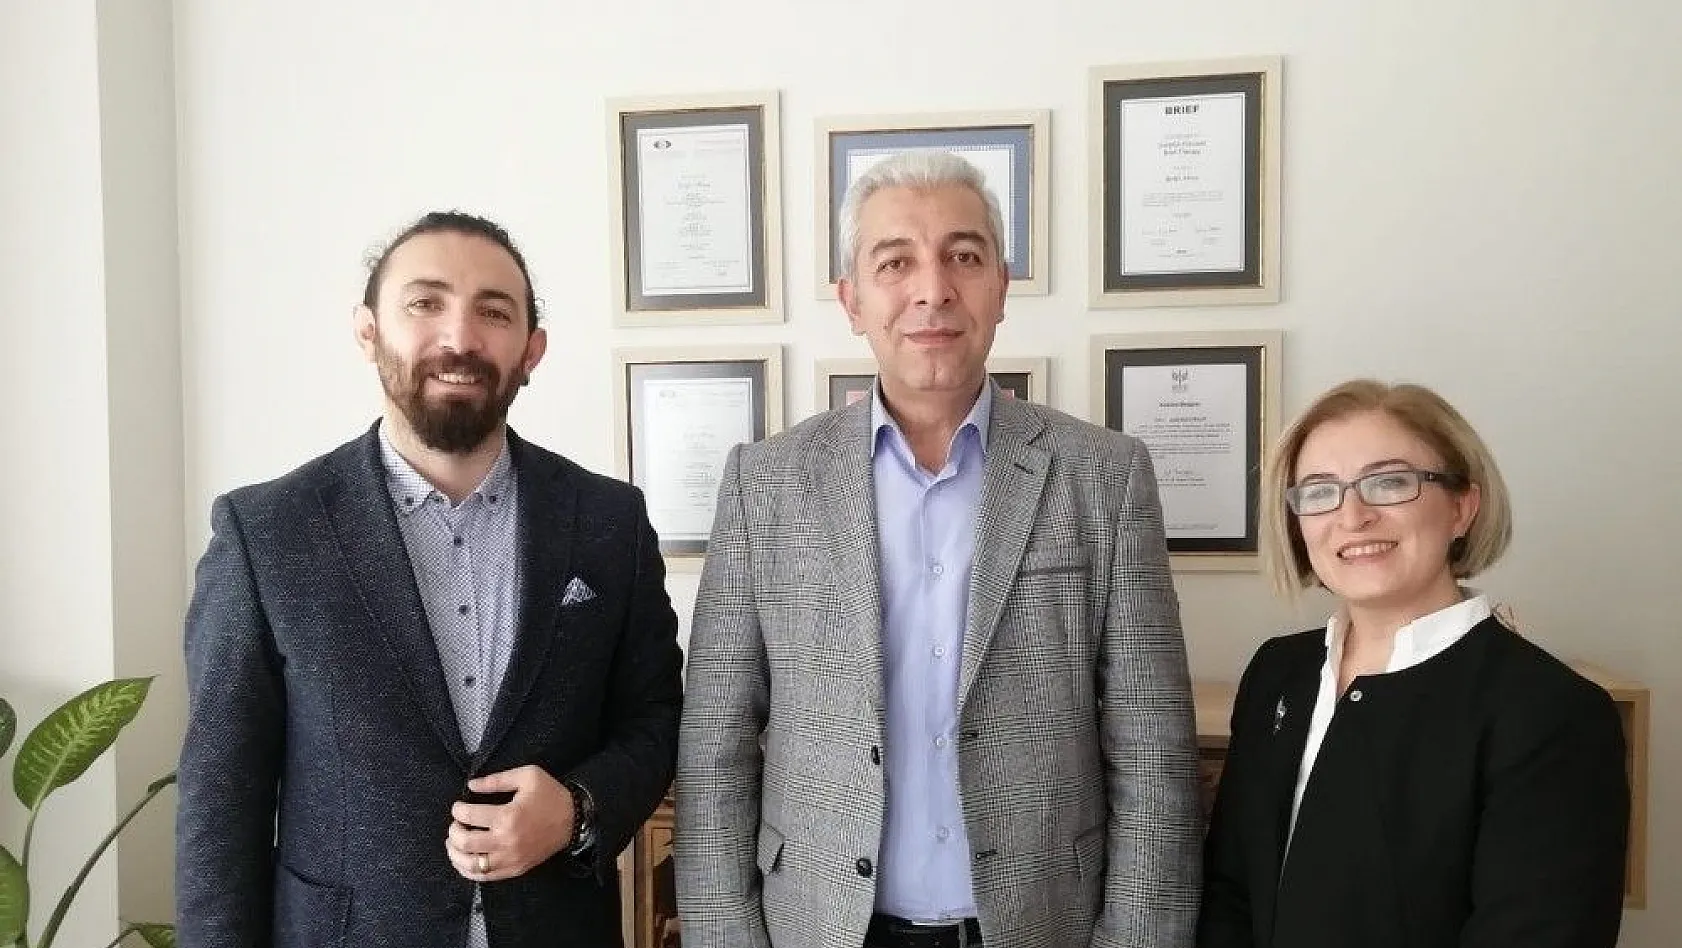 Anda Psikolojik Danışma Merkezi, Kayseri'de hizmete açıldı
